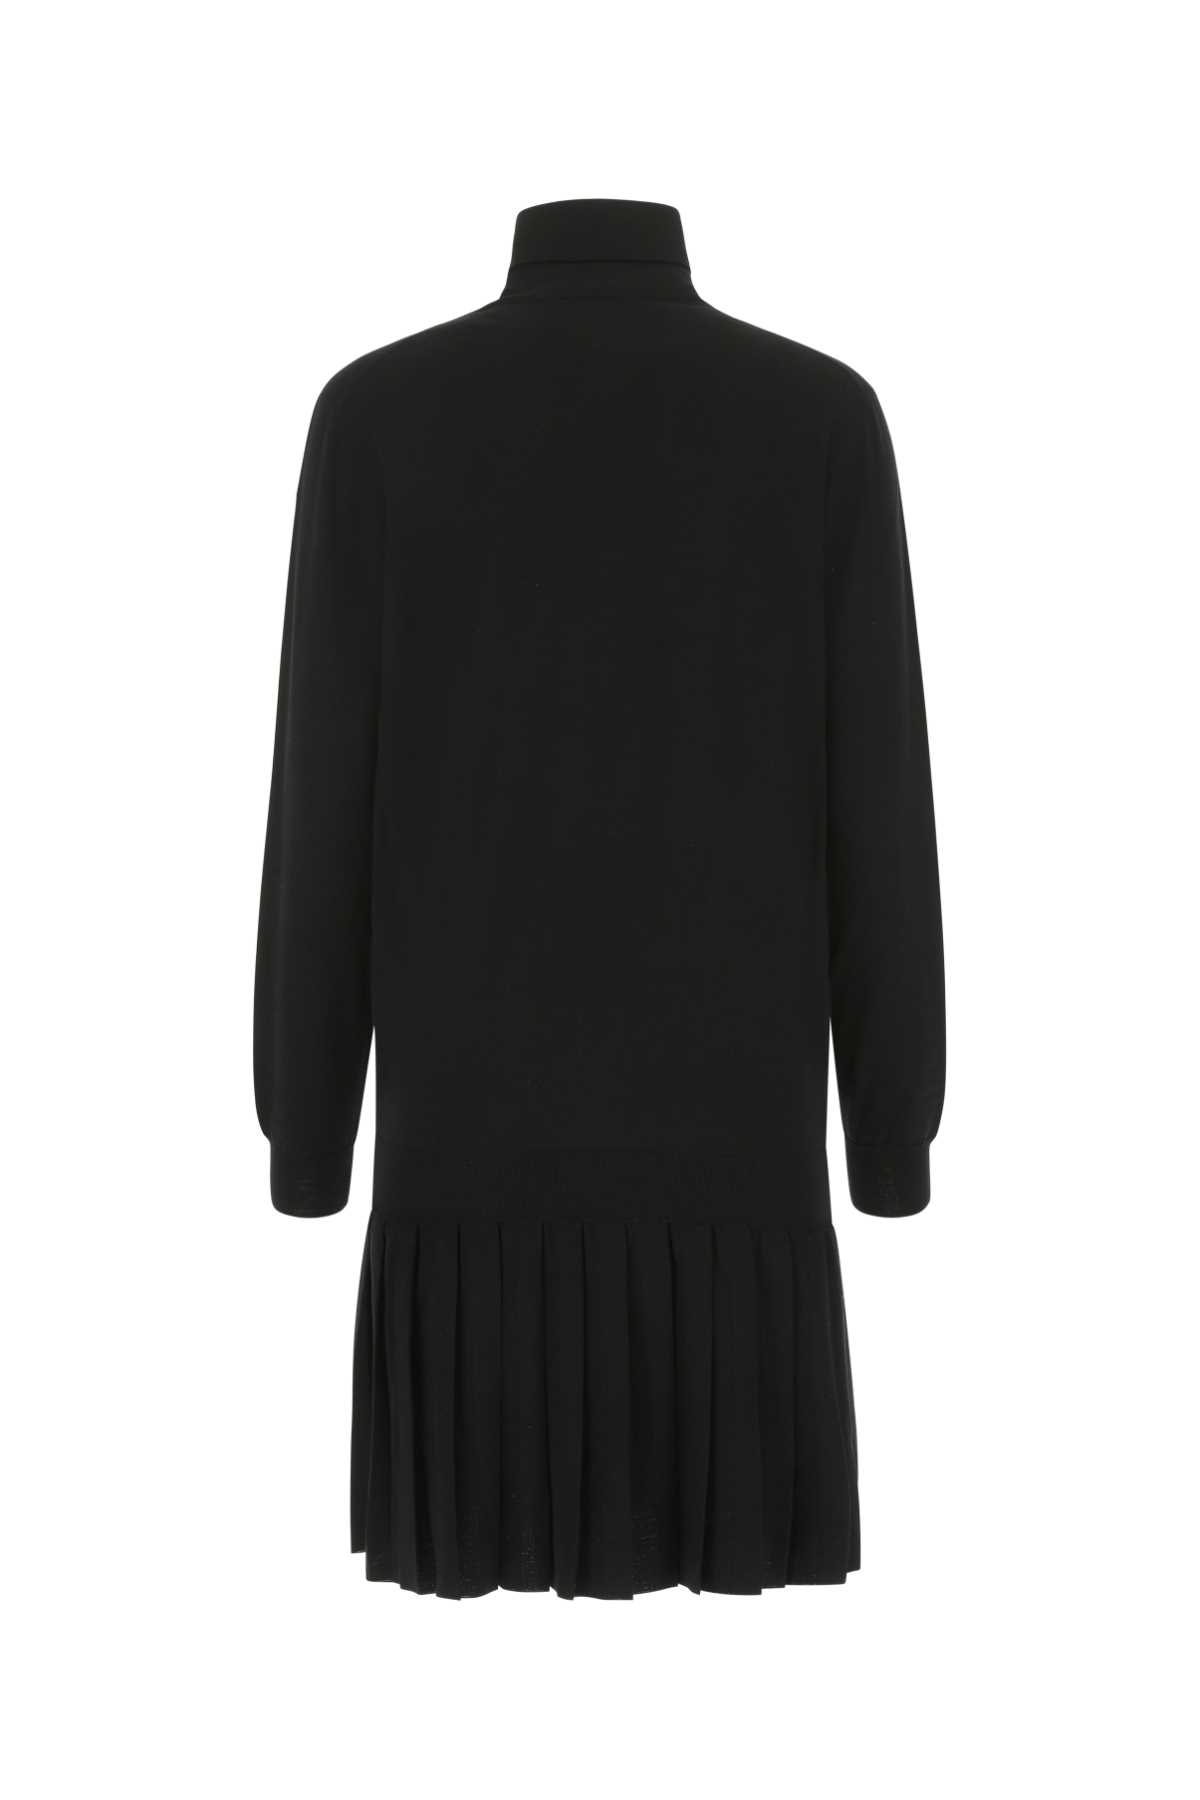 Prada Black Wool Dress In F0002